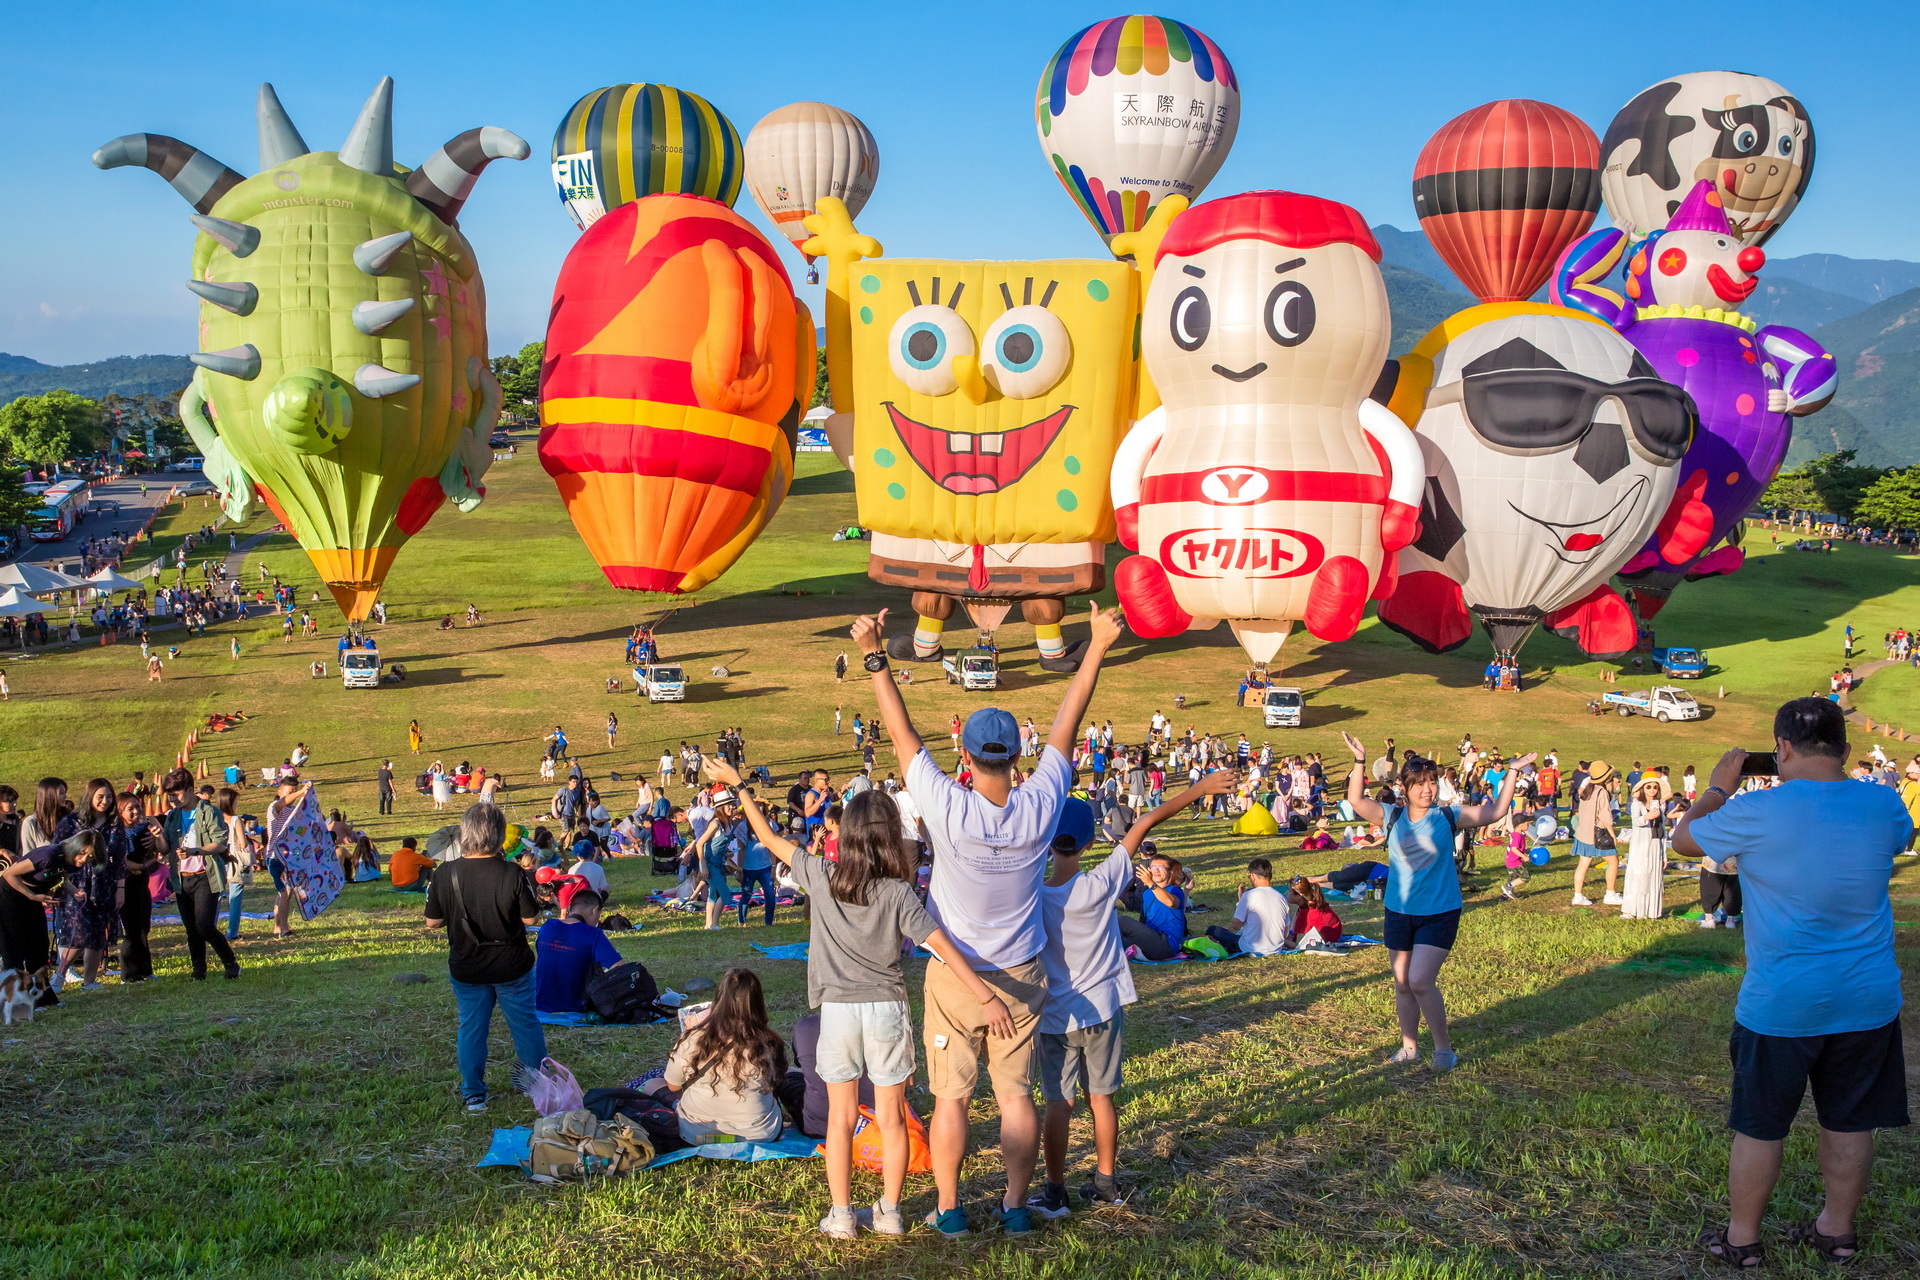 國際熱氣球嘉年華 光雕煙火秀 體驗今年夏季3D視角空中派對